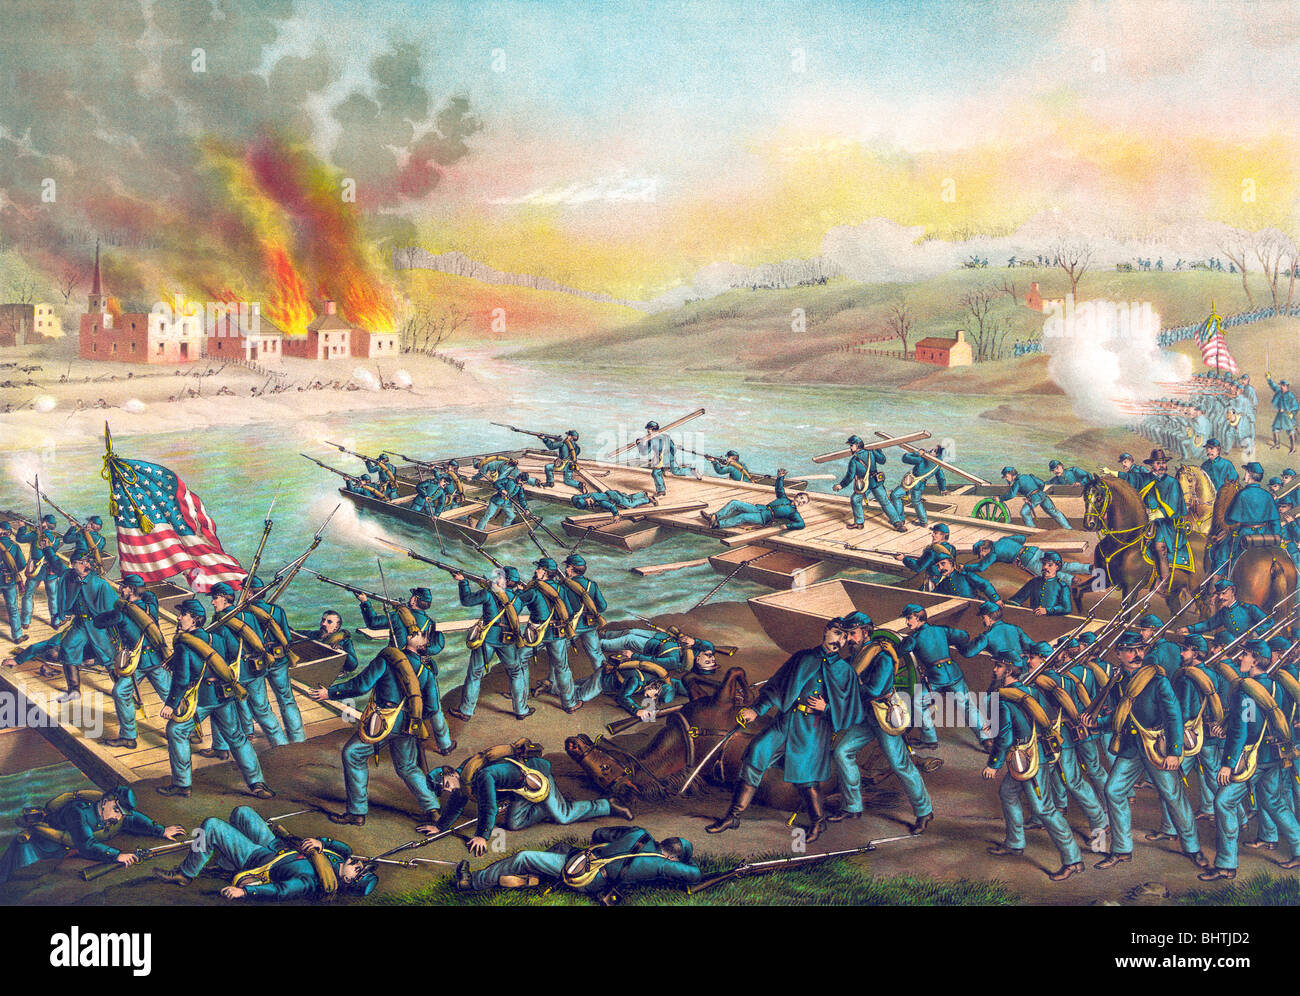 Litografía de impresión color circa 1888 representando la batalla de Fredericksburg durante la Guerra Civil Americana. Foto de stock